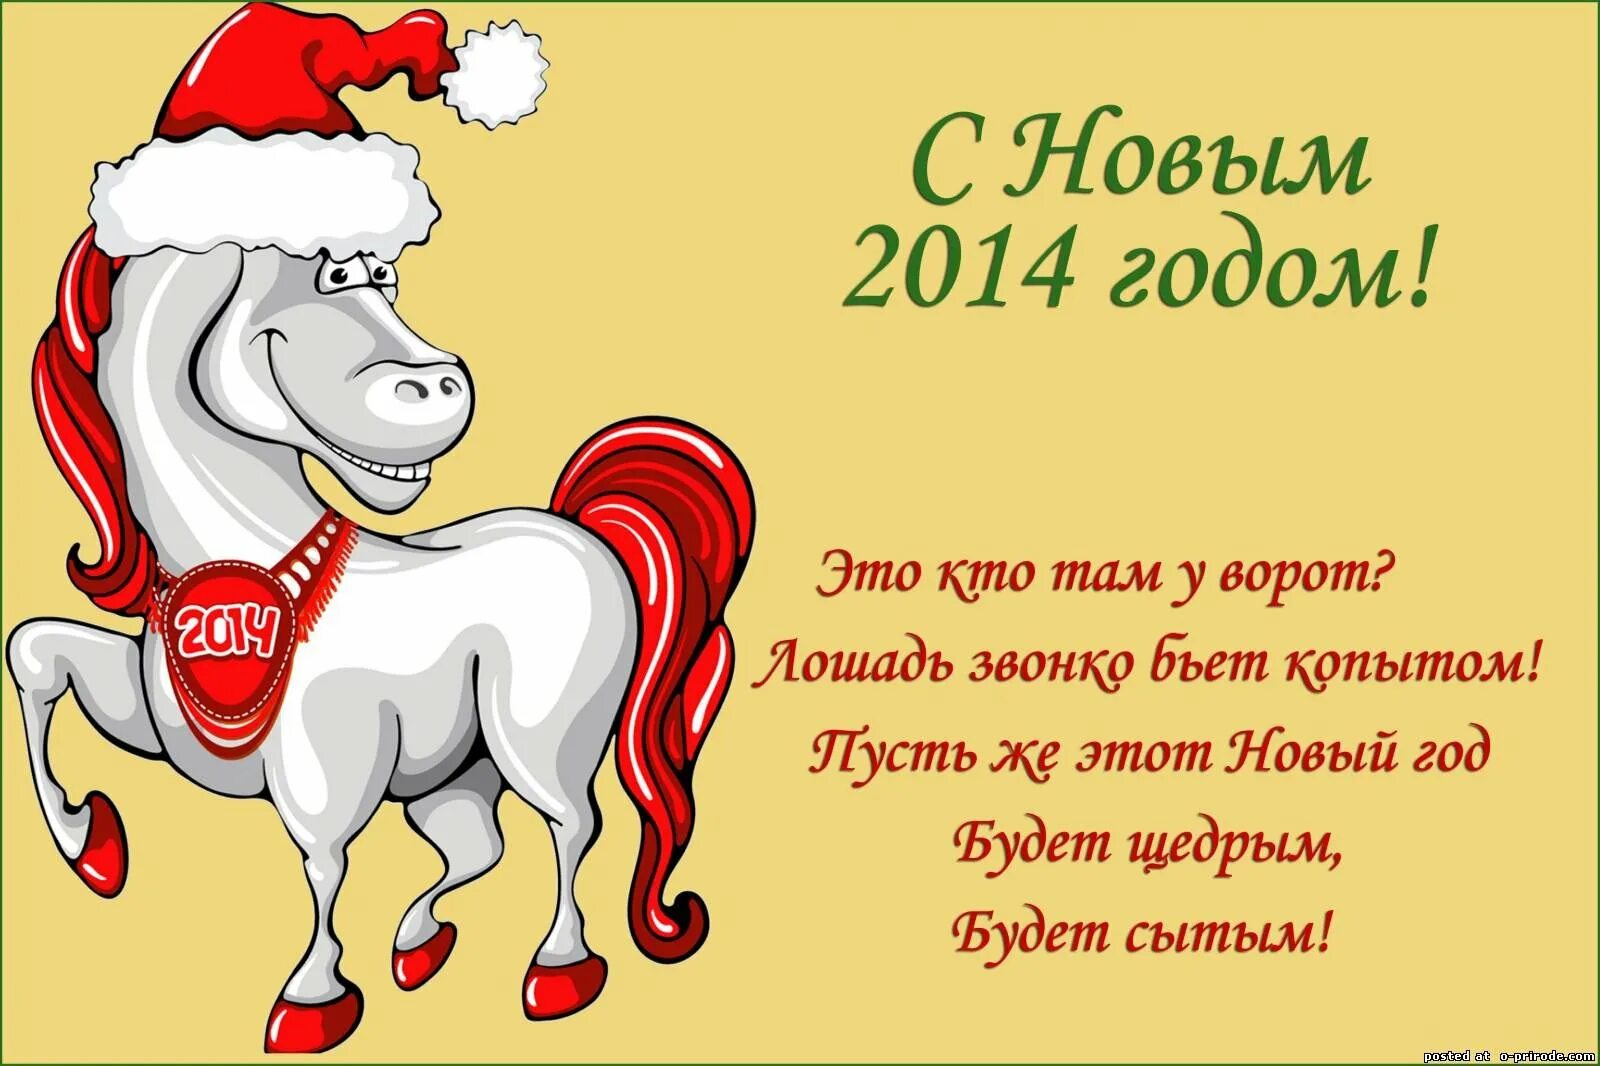 Какой год пожелания. С новым 2014 годом. Поздравления с новым годом 2014. Поздравления с новым годом лошади 2014. Открытки с новым годом 2014.